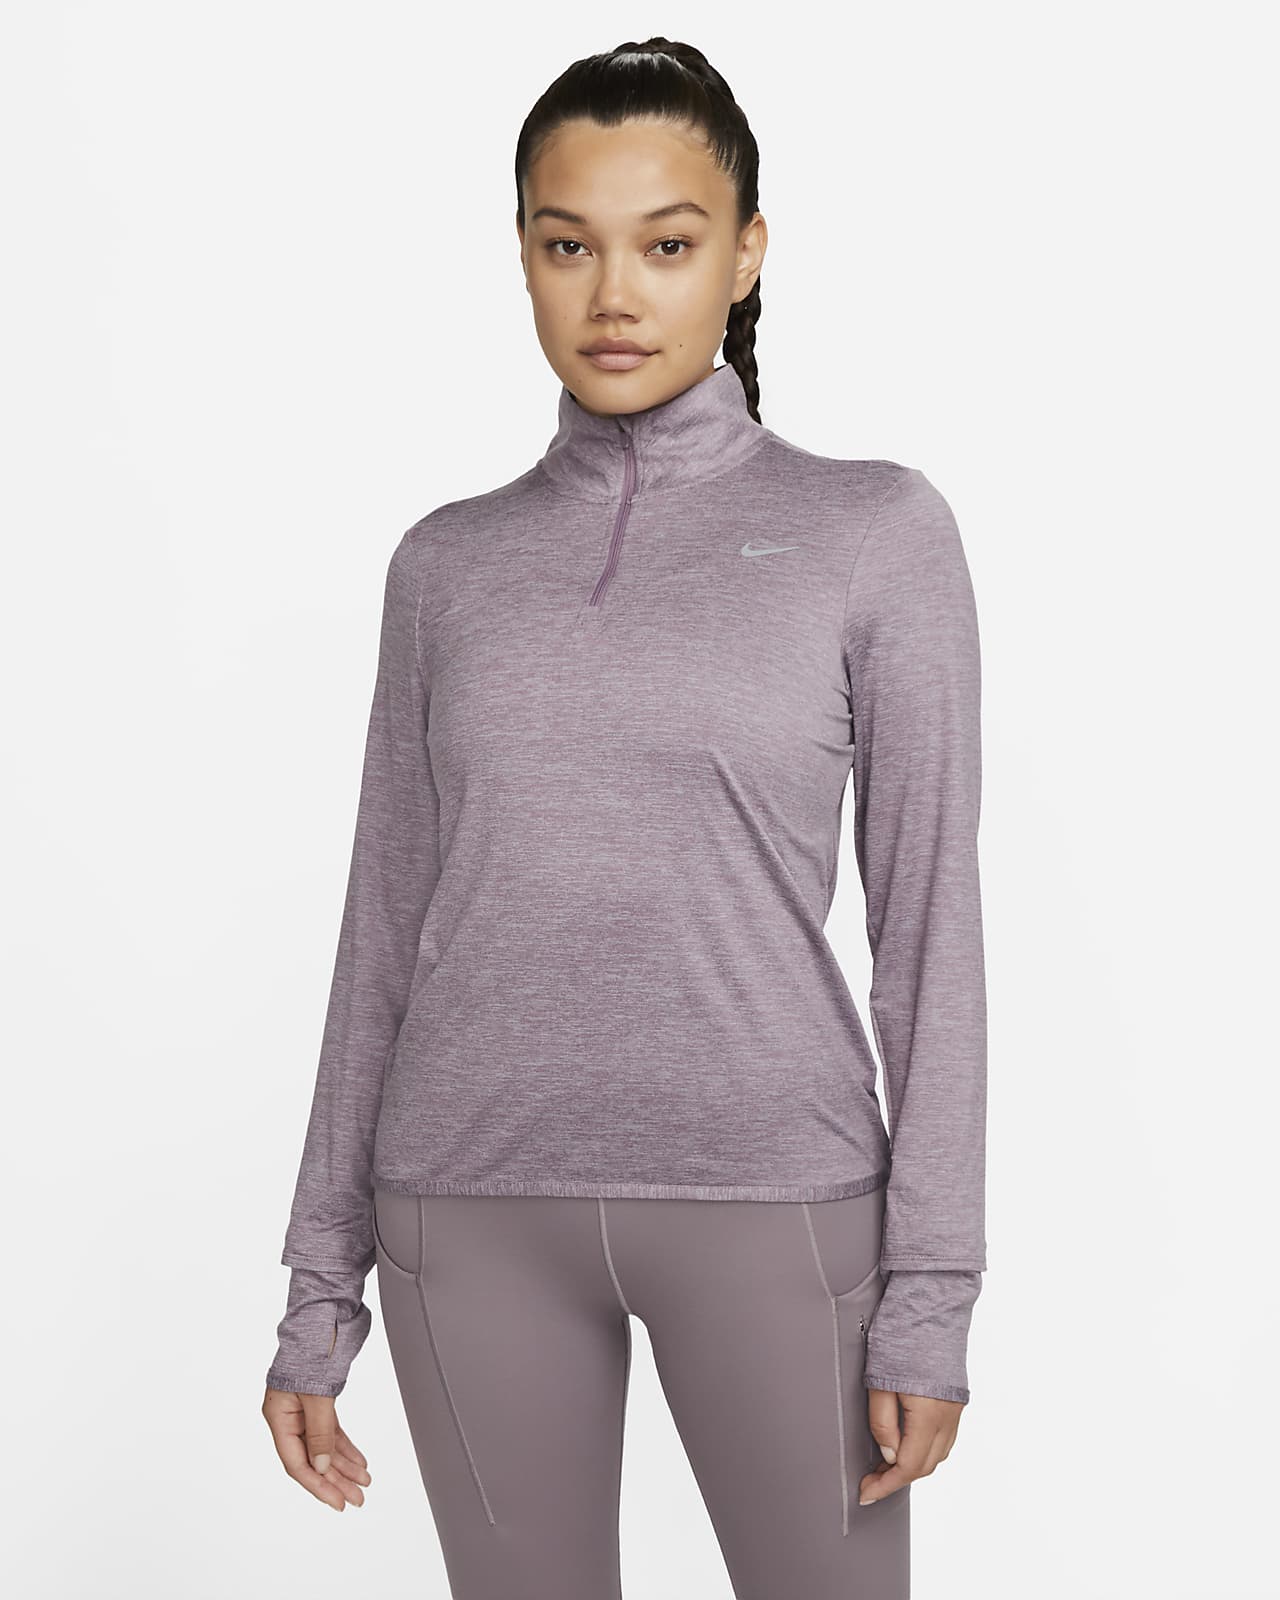 Nike Dri-FIT Swift UV Women's 1/4-Zip Running Top